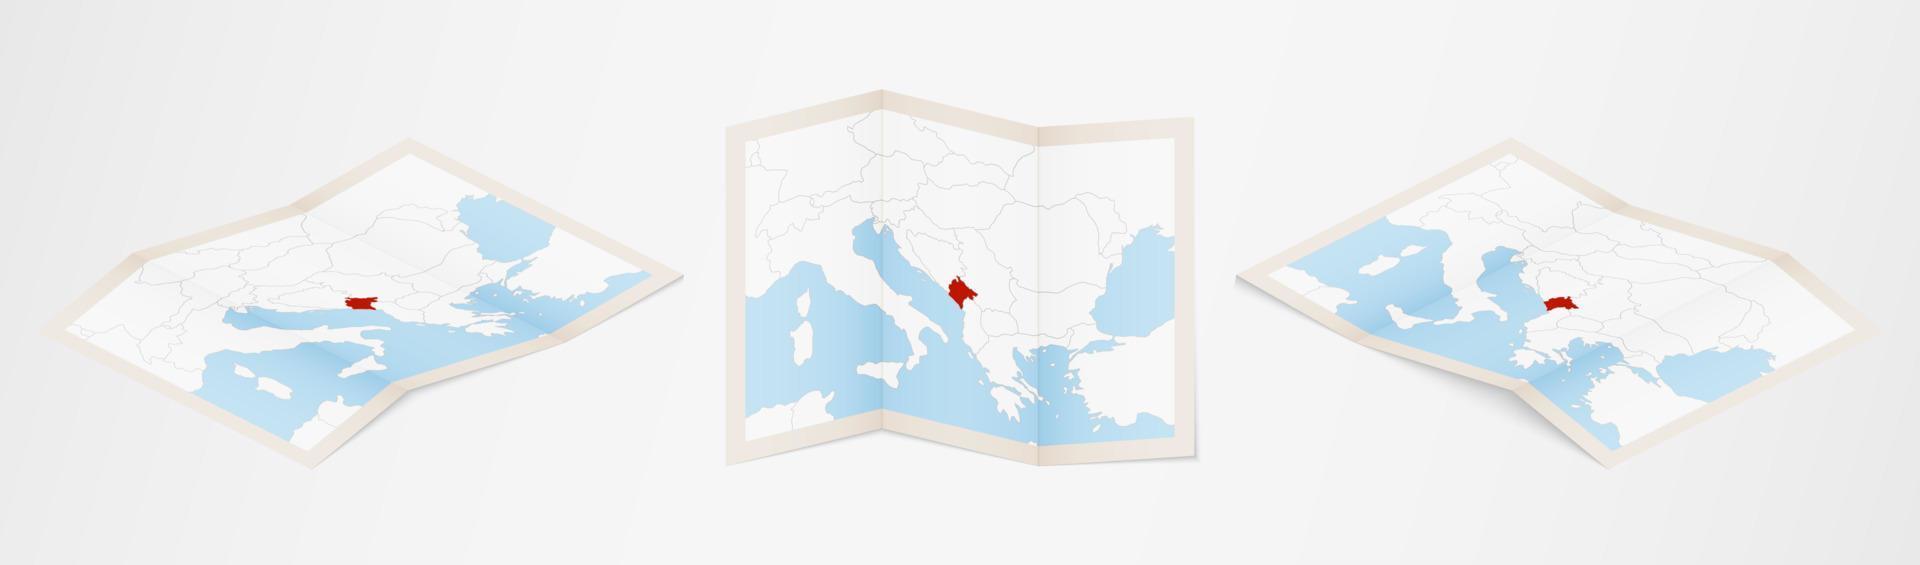 mapa dobrado de montenegro em três versões diferentes. vetor